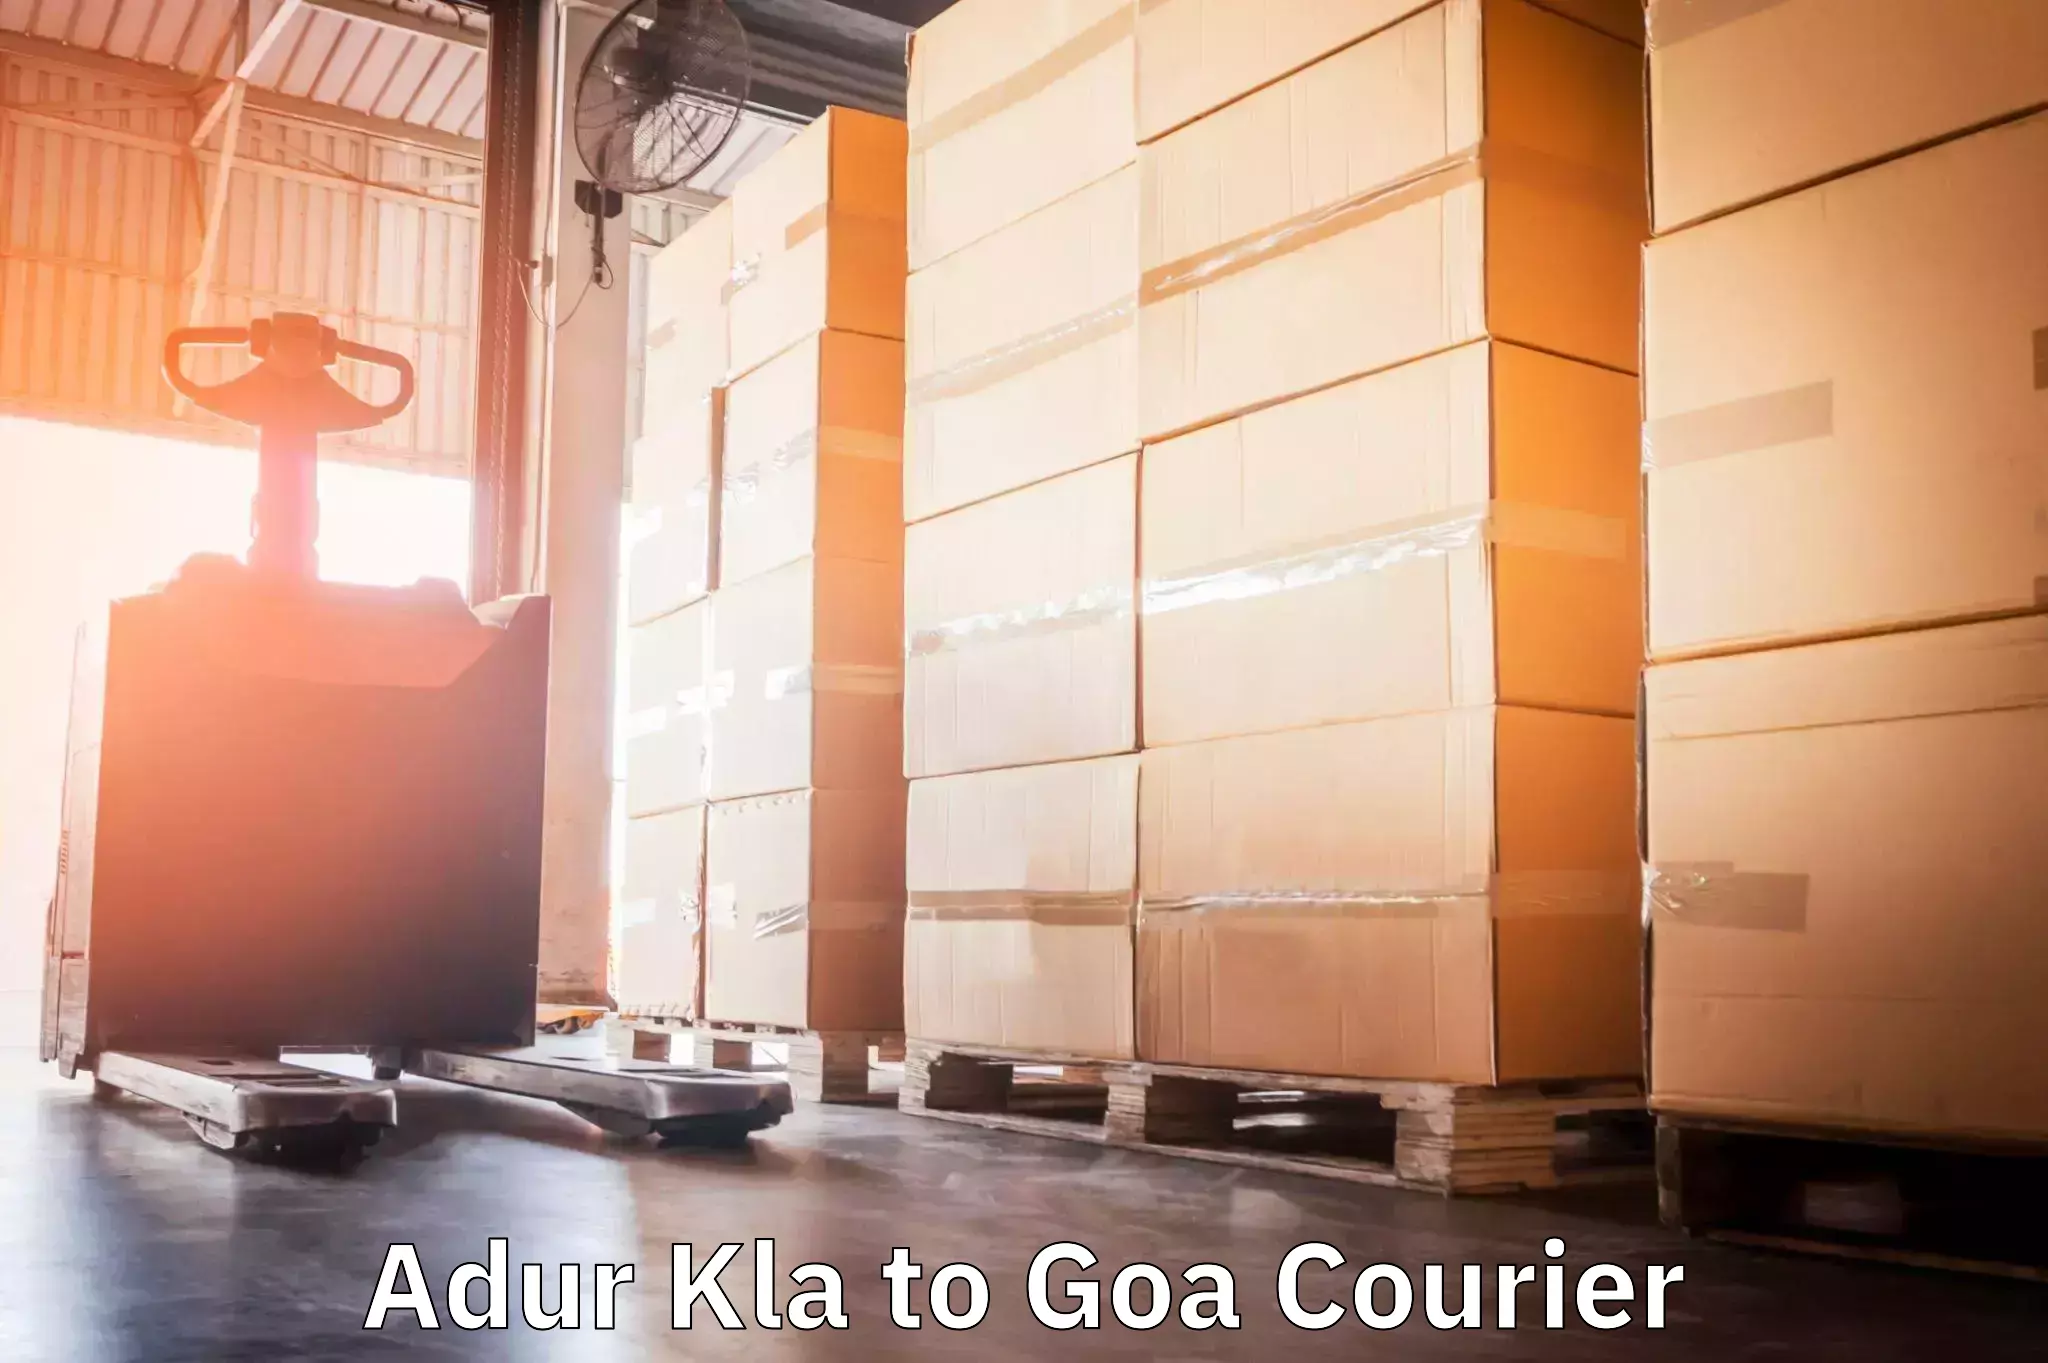 Cargo delivery service Adur Kla to Goa